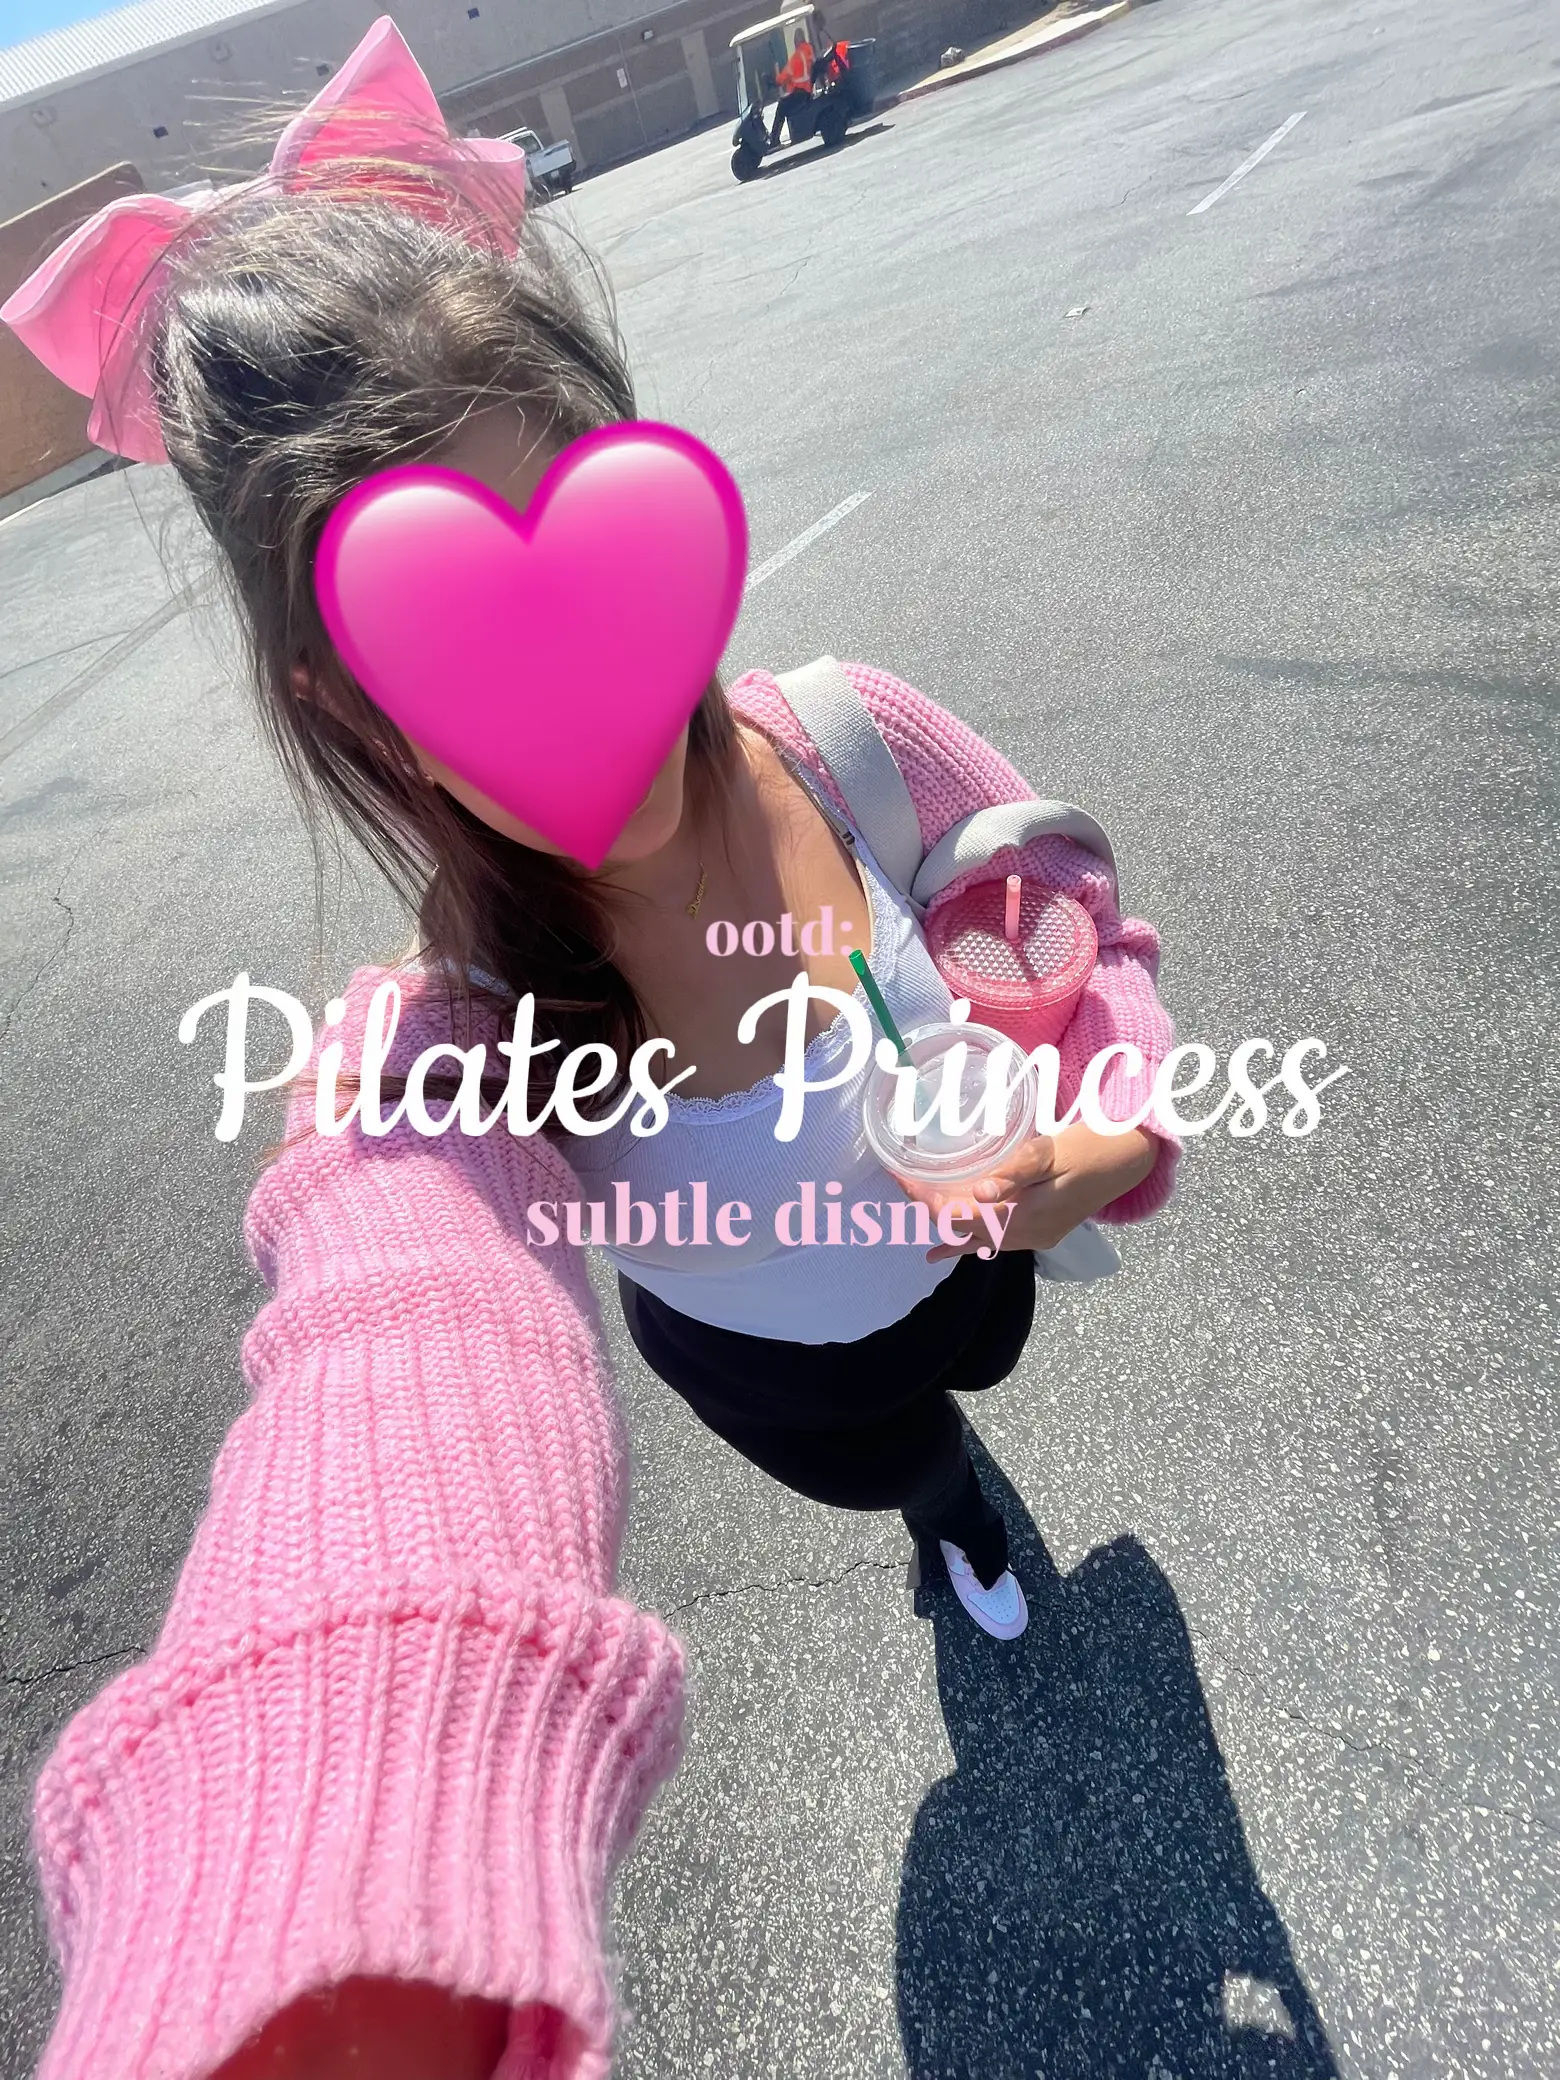 Pink Pilates Princess Wallpaper - Lemon8 Search